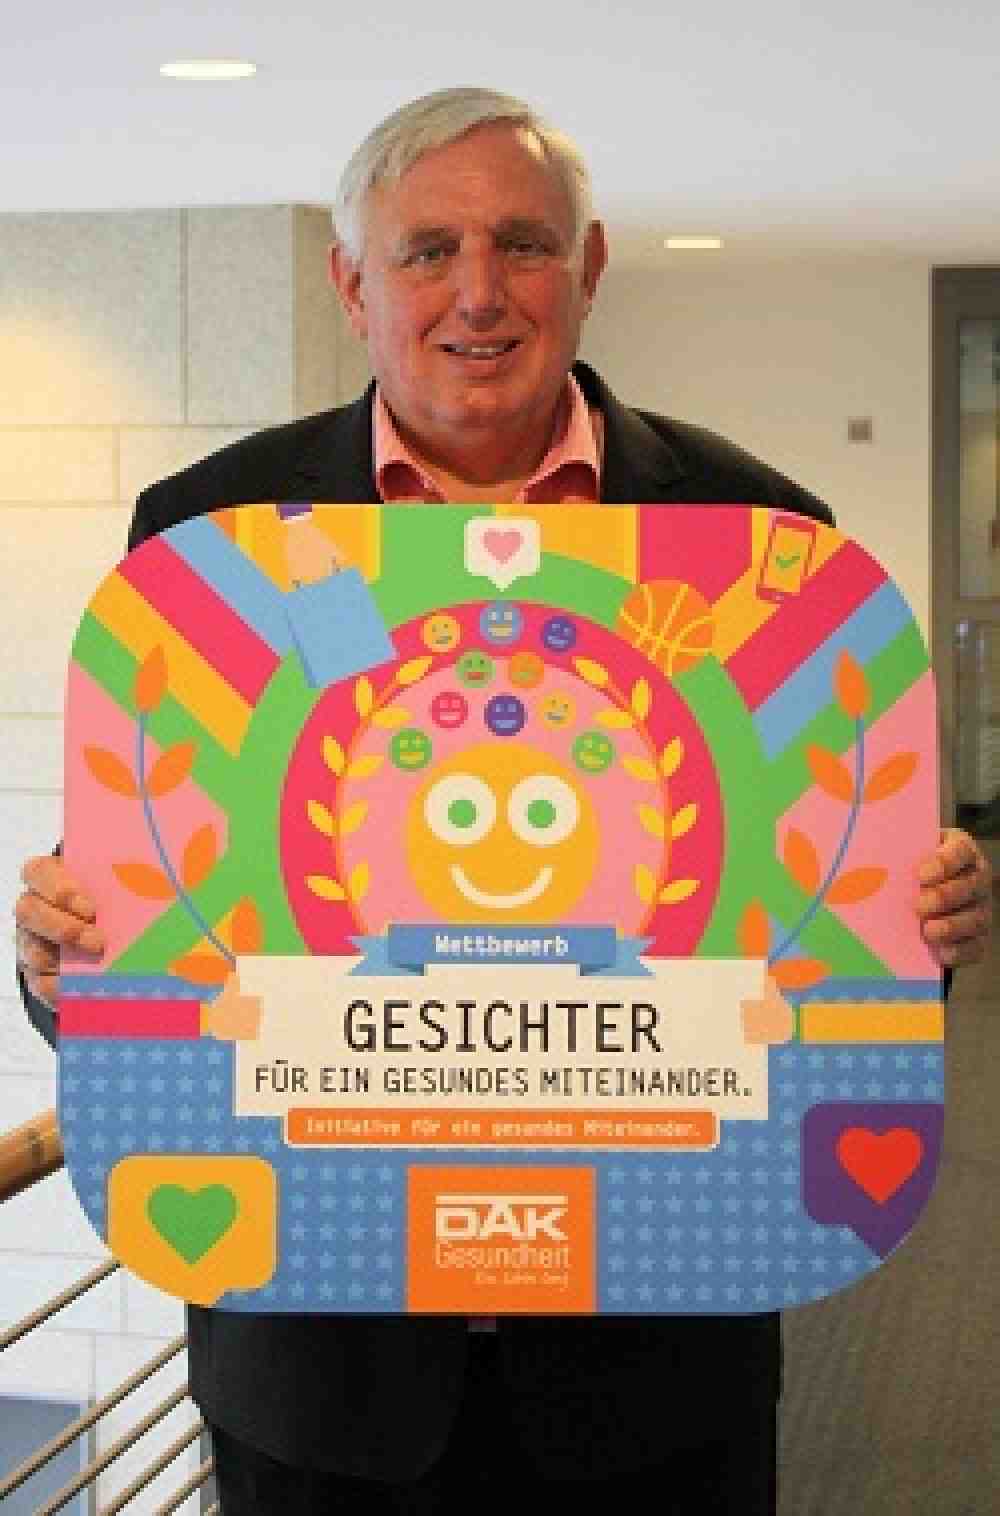 Nordrhein-Westfalen: Minister Laumann und DAK-Gesundheit suchen Gesichter für ein gesundes Miteinander 2021